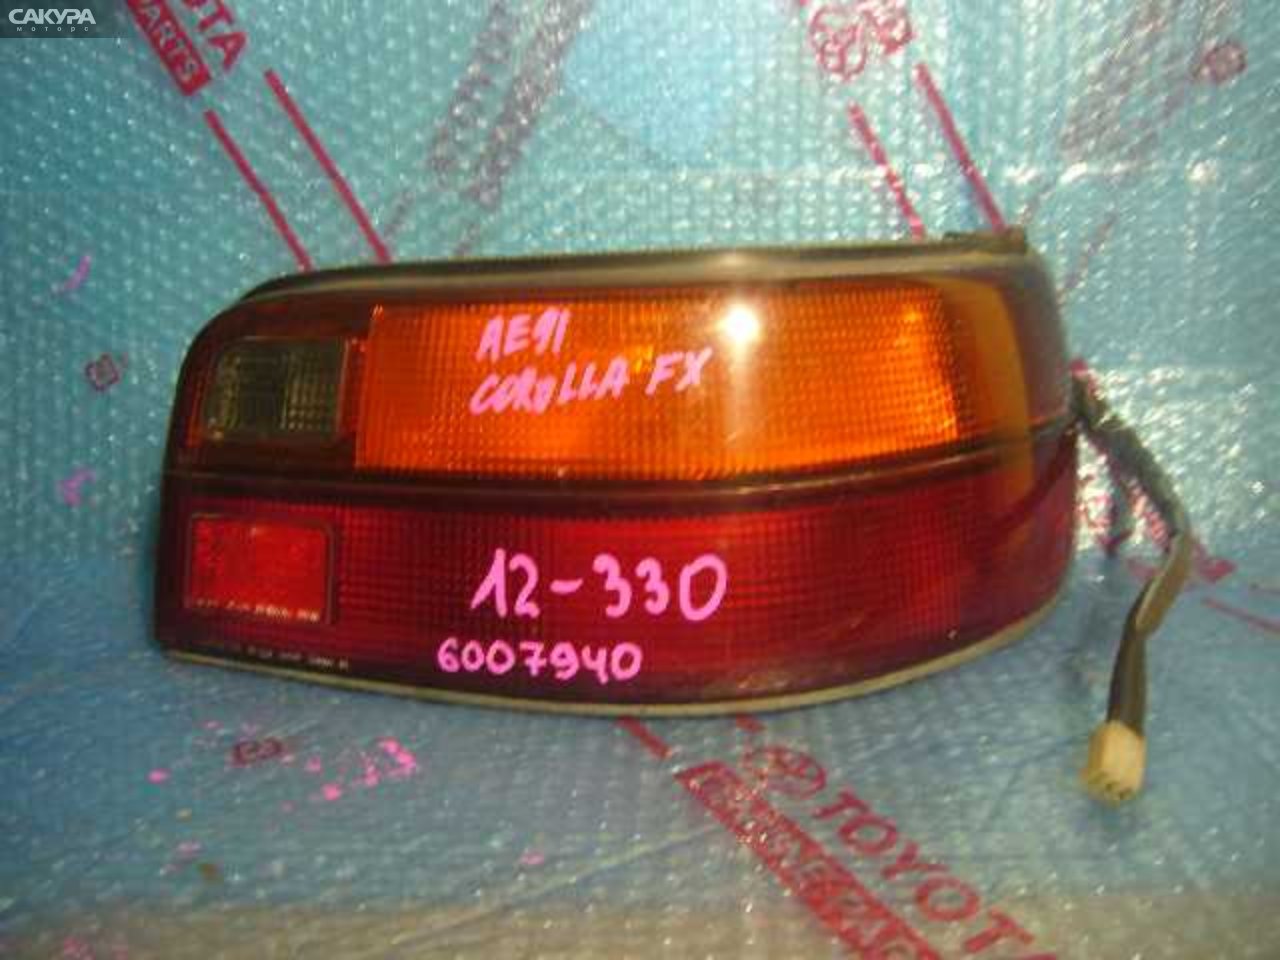 Фонарь стоп-сигнала правый Toyota Corolla FX AE91 12-330: купить в Сакура Кемерово.